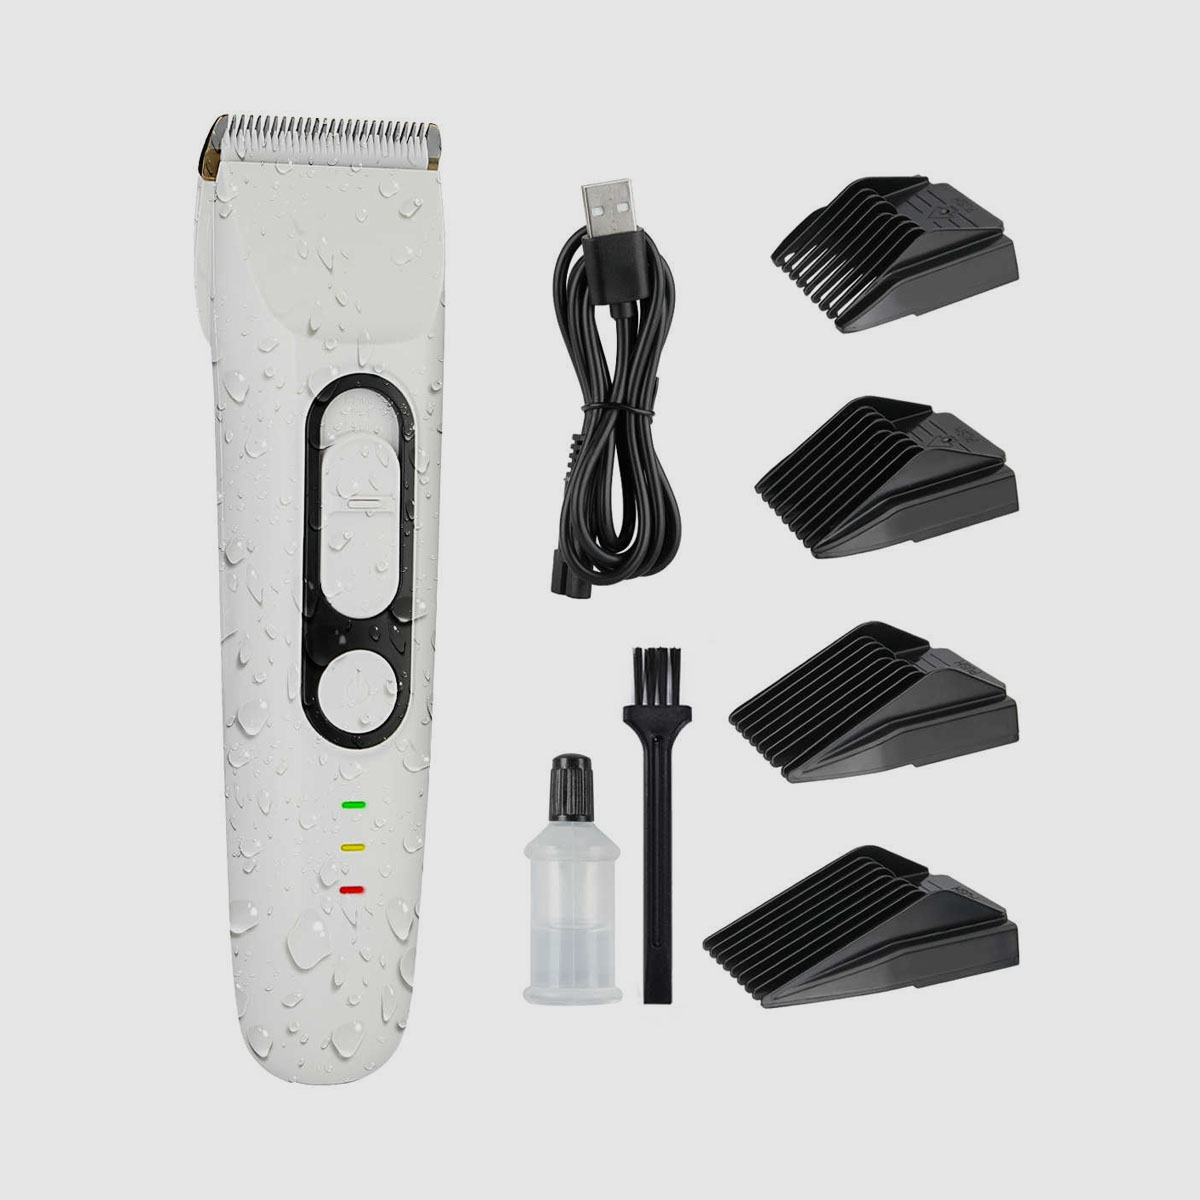 جهاز تشذيب الشعر اللاسلكي الهادئ IPX7 المقاوم للماء - 0